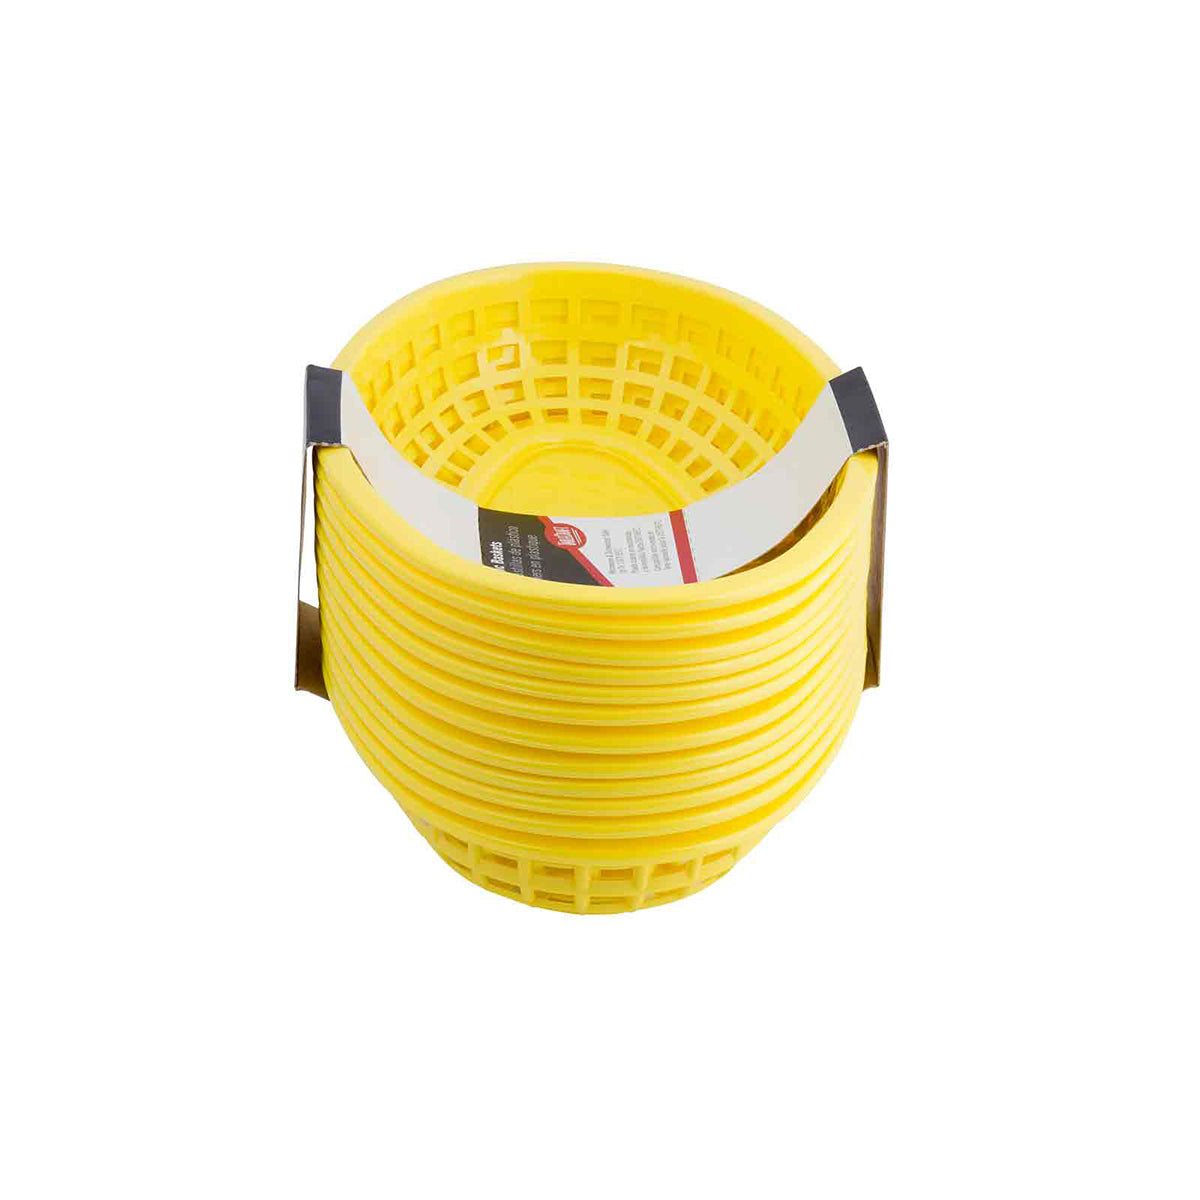 Canastilla Oval de Plástico Amarillo 24x15x5 cm 12 piezas